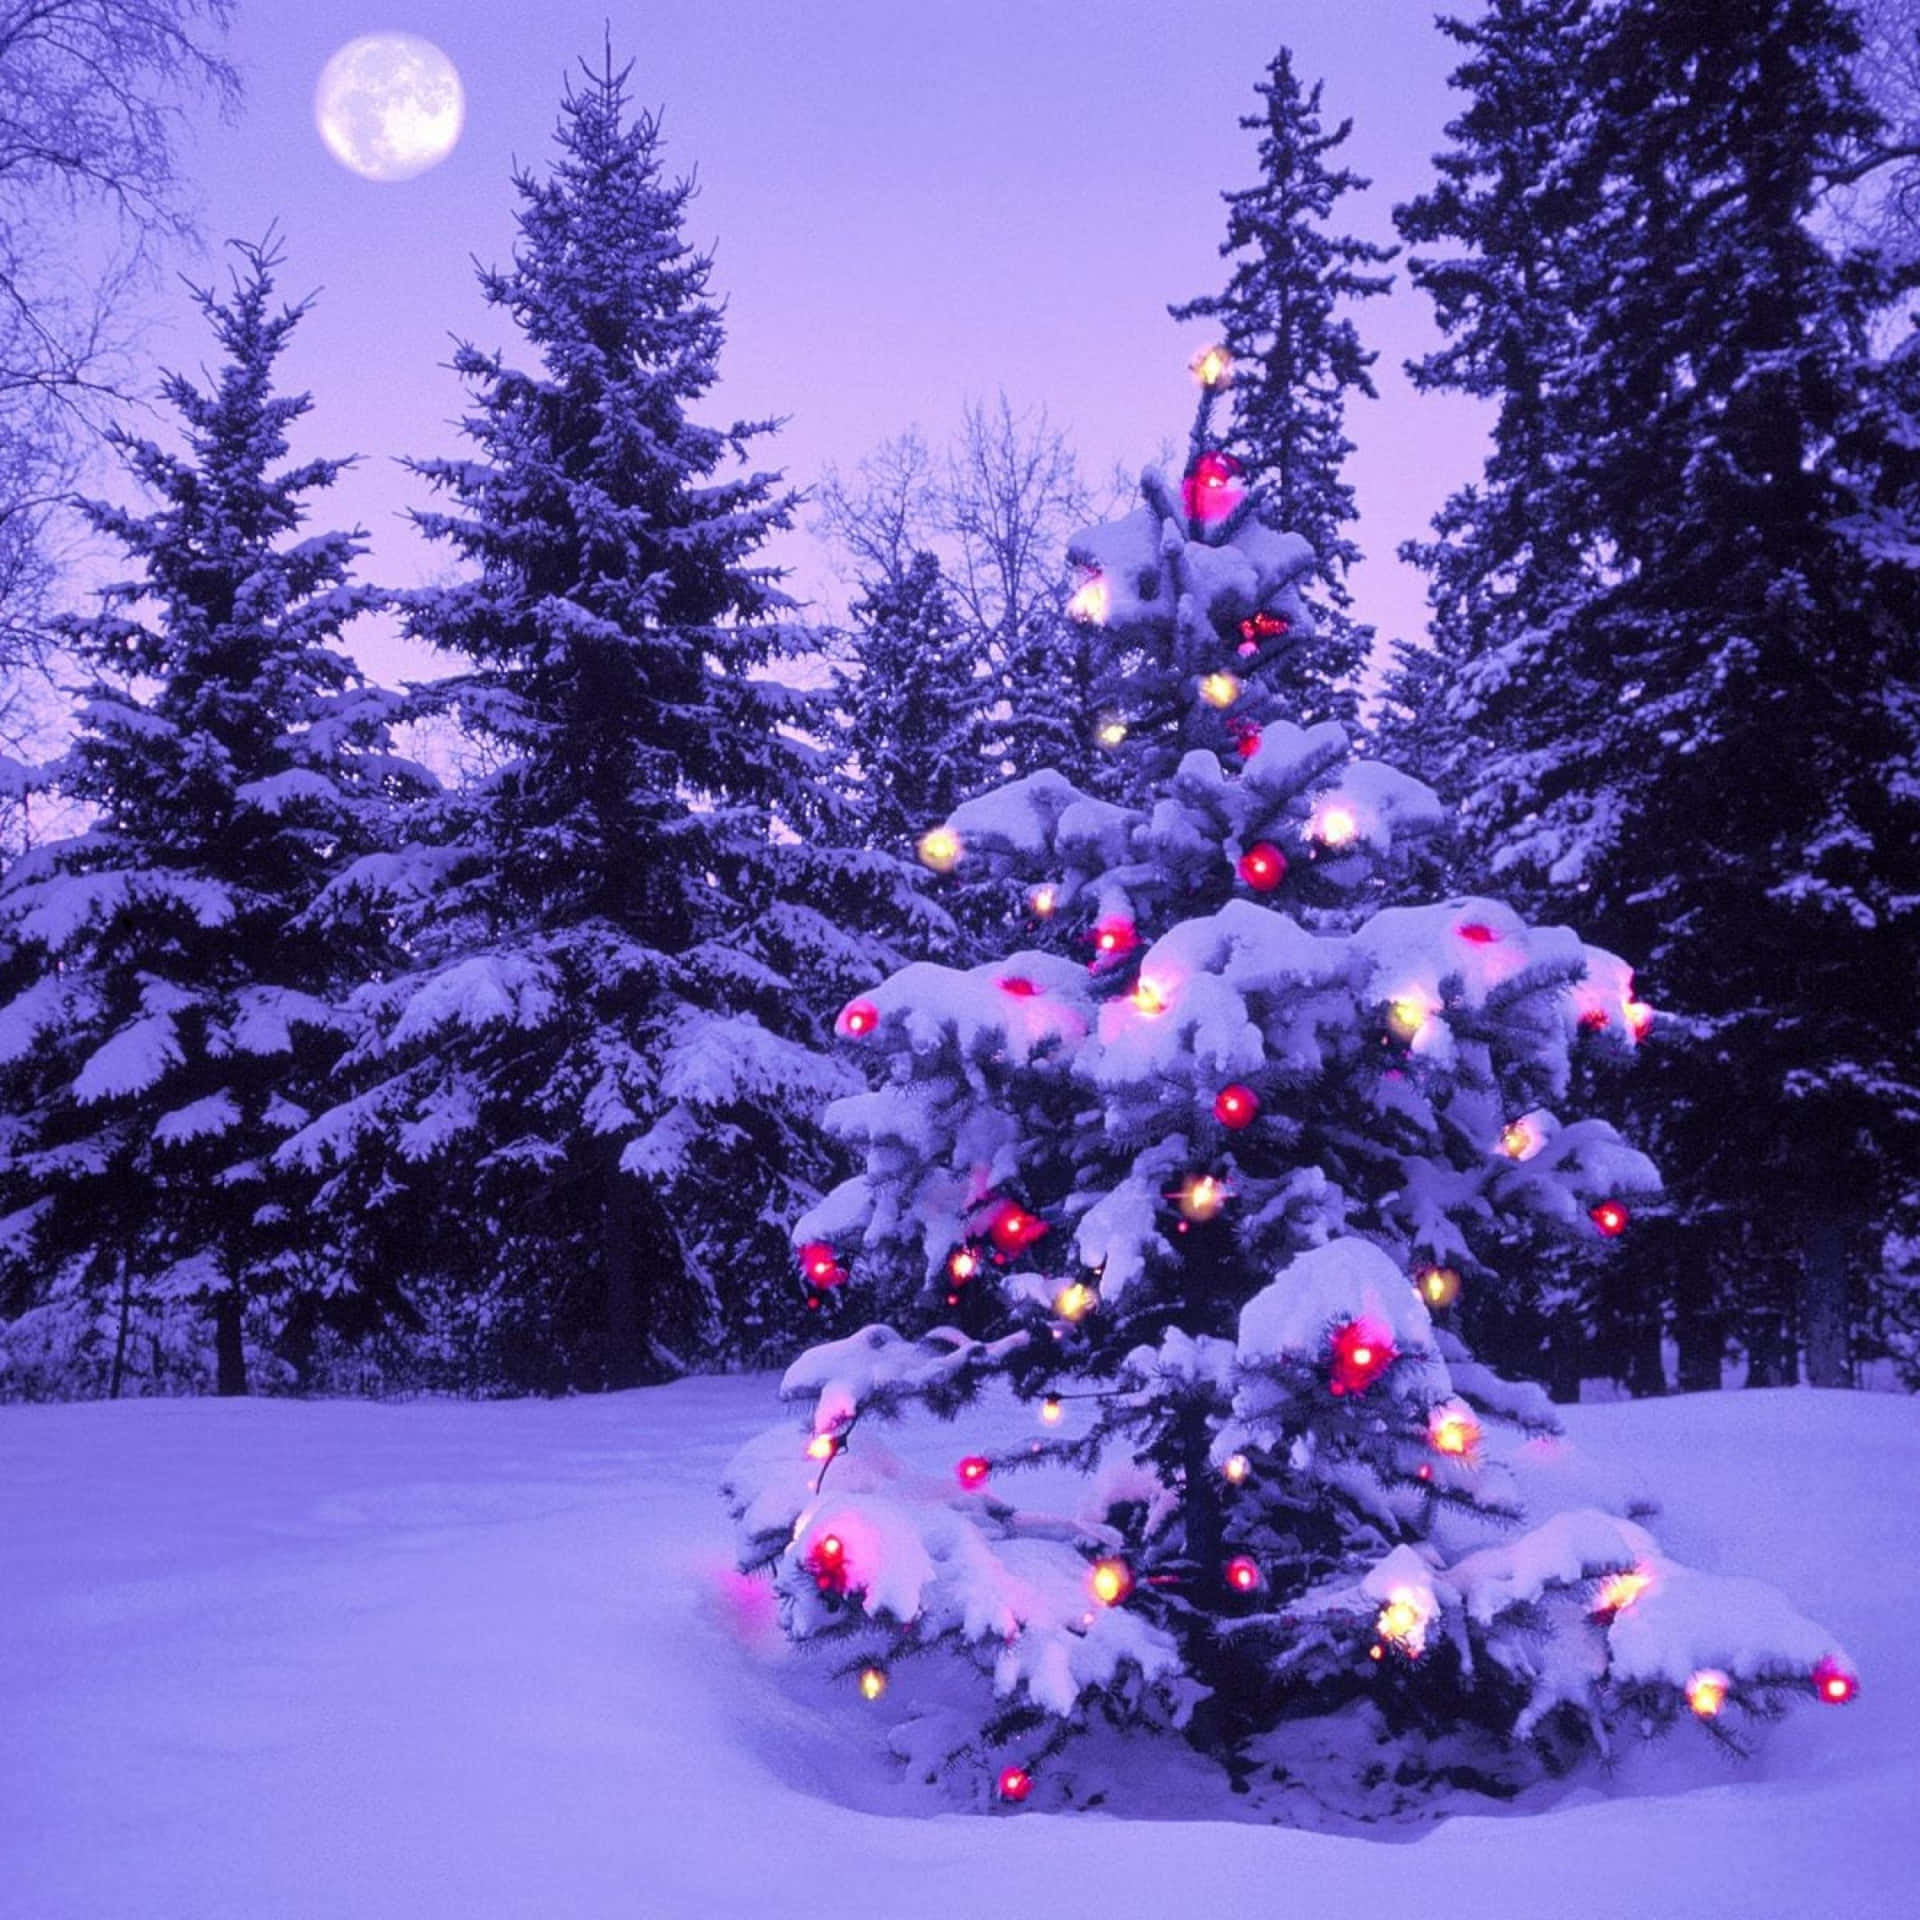 Einweihnachtsbaum Im Schnee Unter Einem Vollmond. Wallpaper